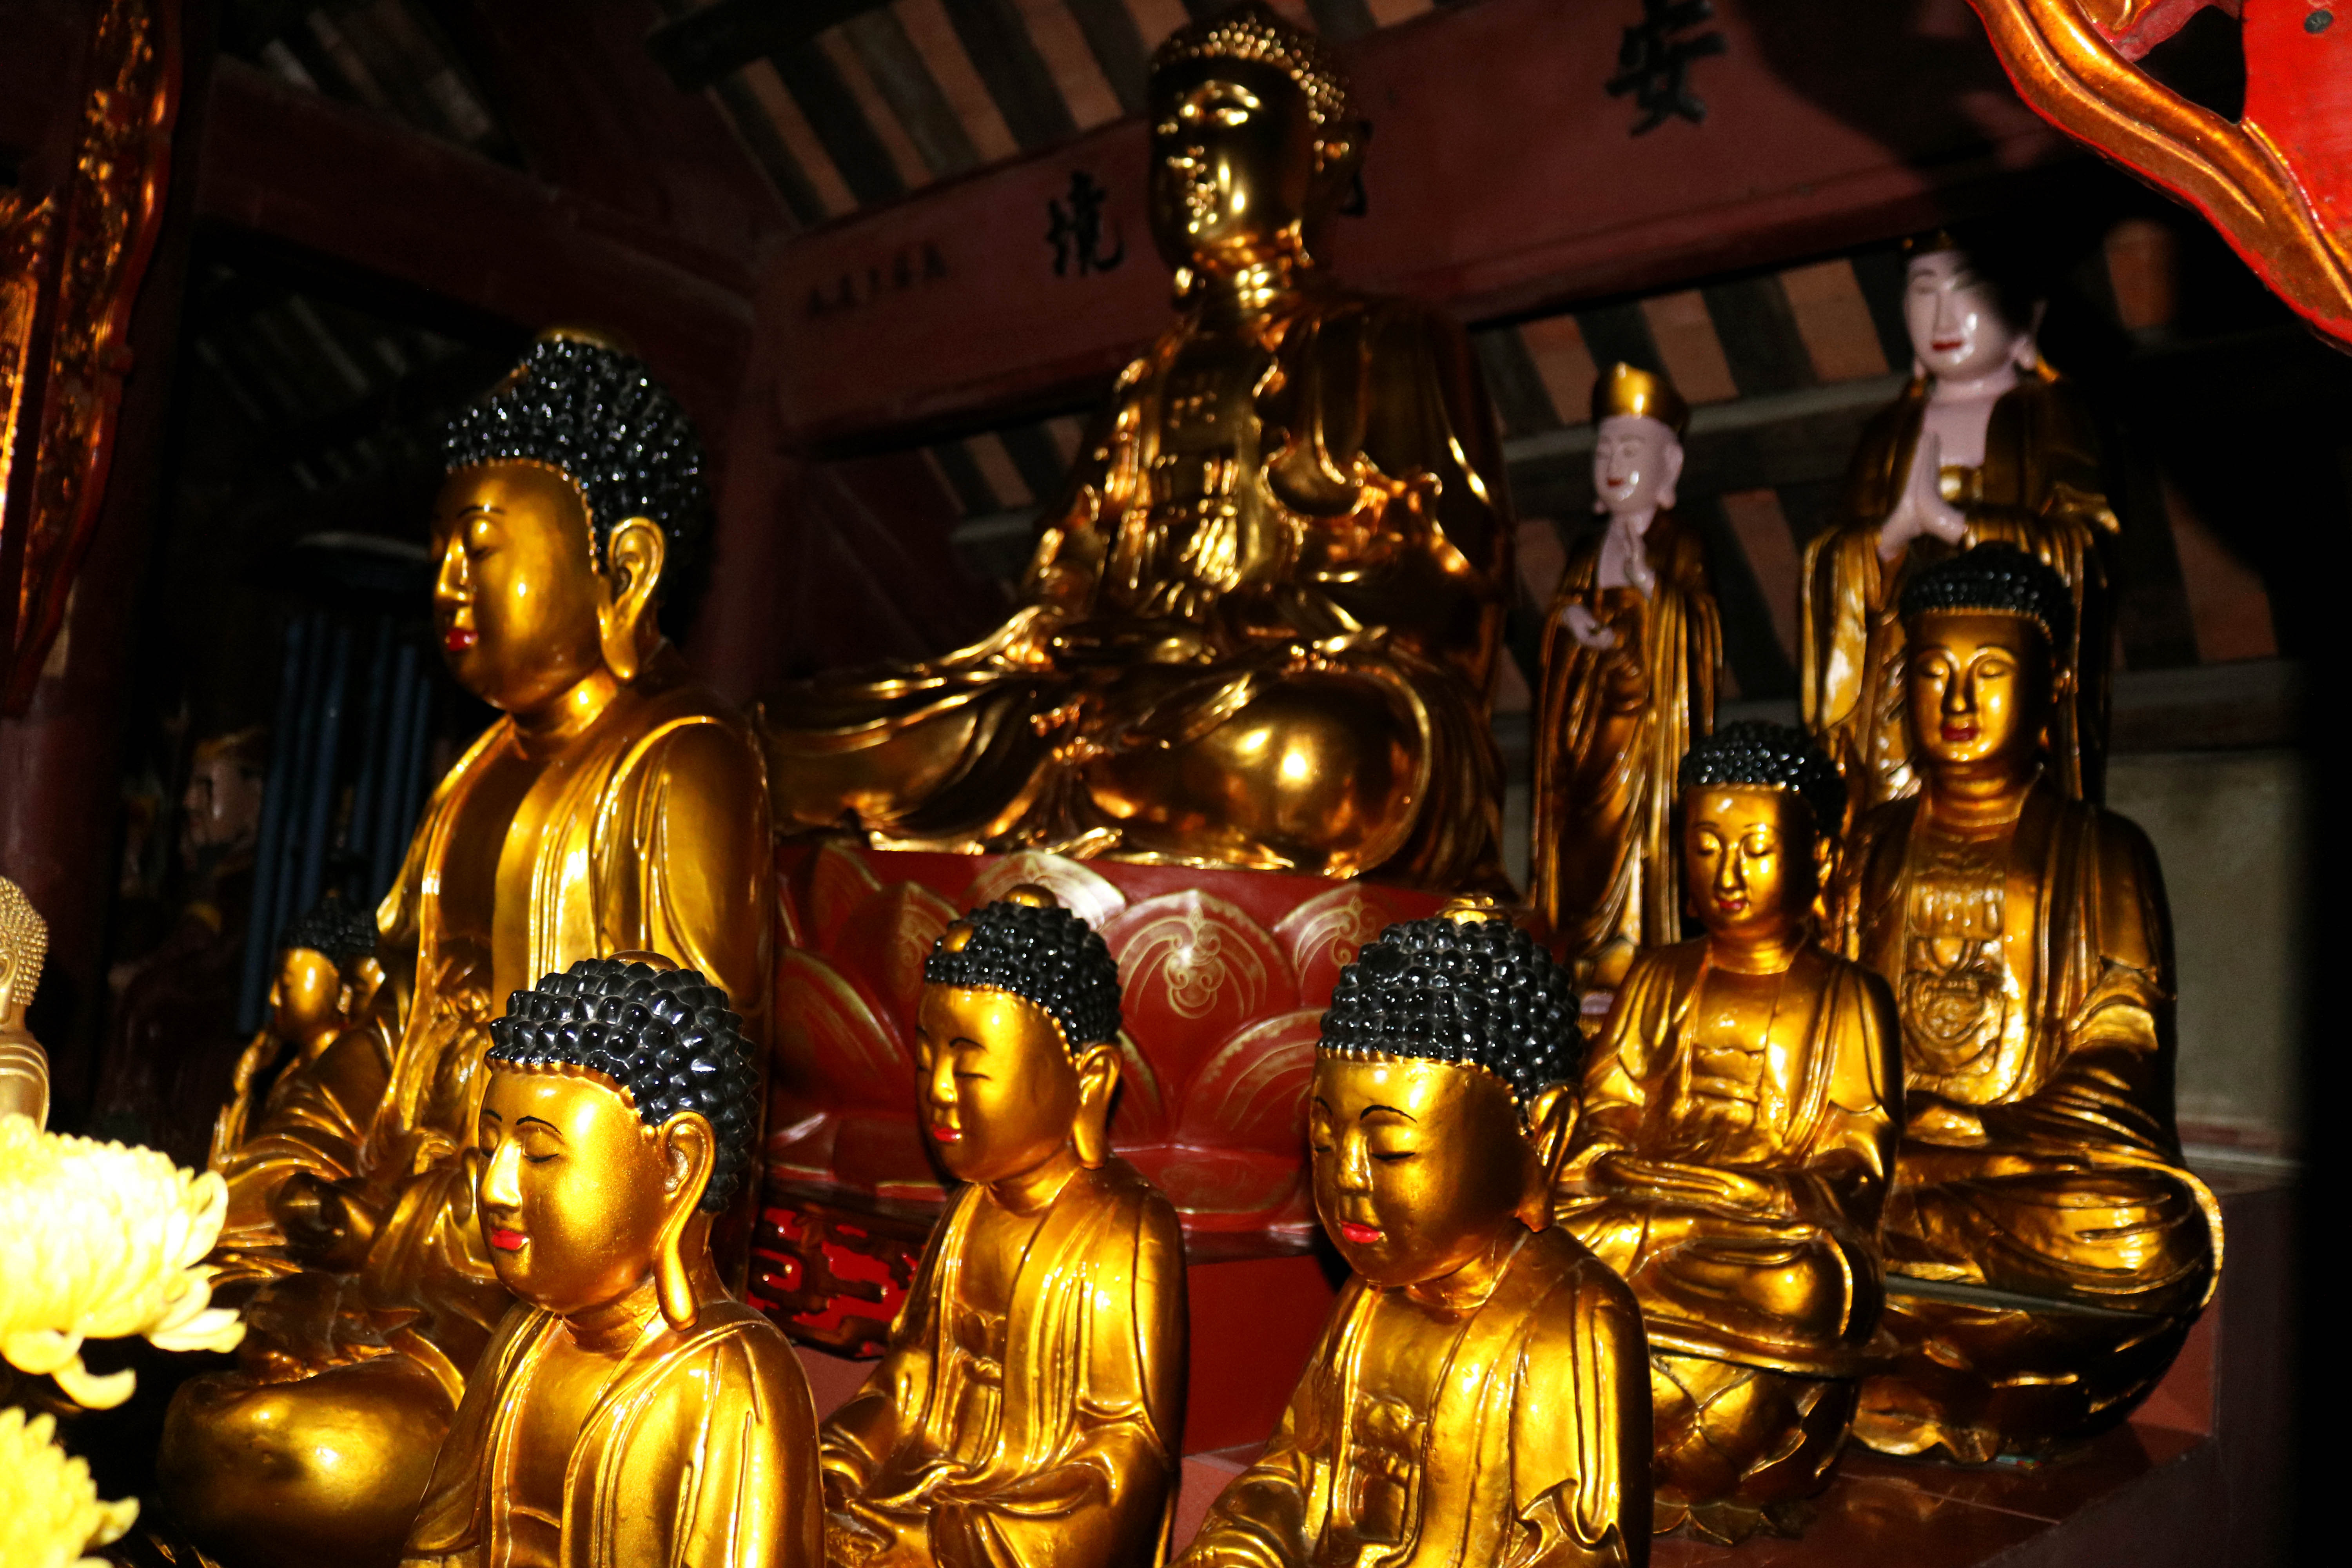 Bên trong chính điện, thờ 43 pho tượng cổ bằng gỗ, đa dạng về loại hình, đặc sắc về cấu tạo, nghệ thuật tạc tượng. Gian giữa thờ 15 pho tượng, trong đó có 3 tượng Bồ tát và 12 tượng Phật Thích Ca tương đối giống nhau về hình dáng.  